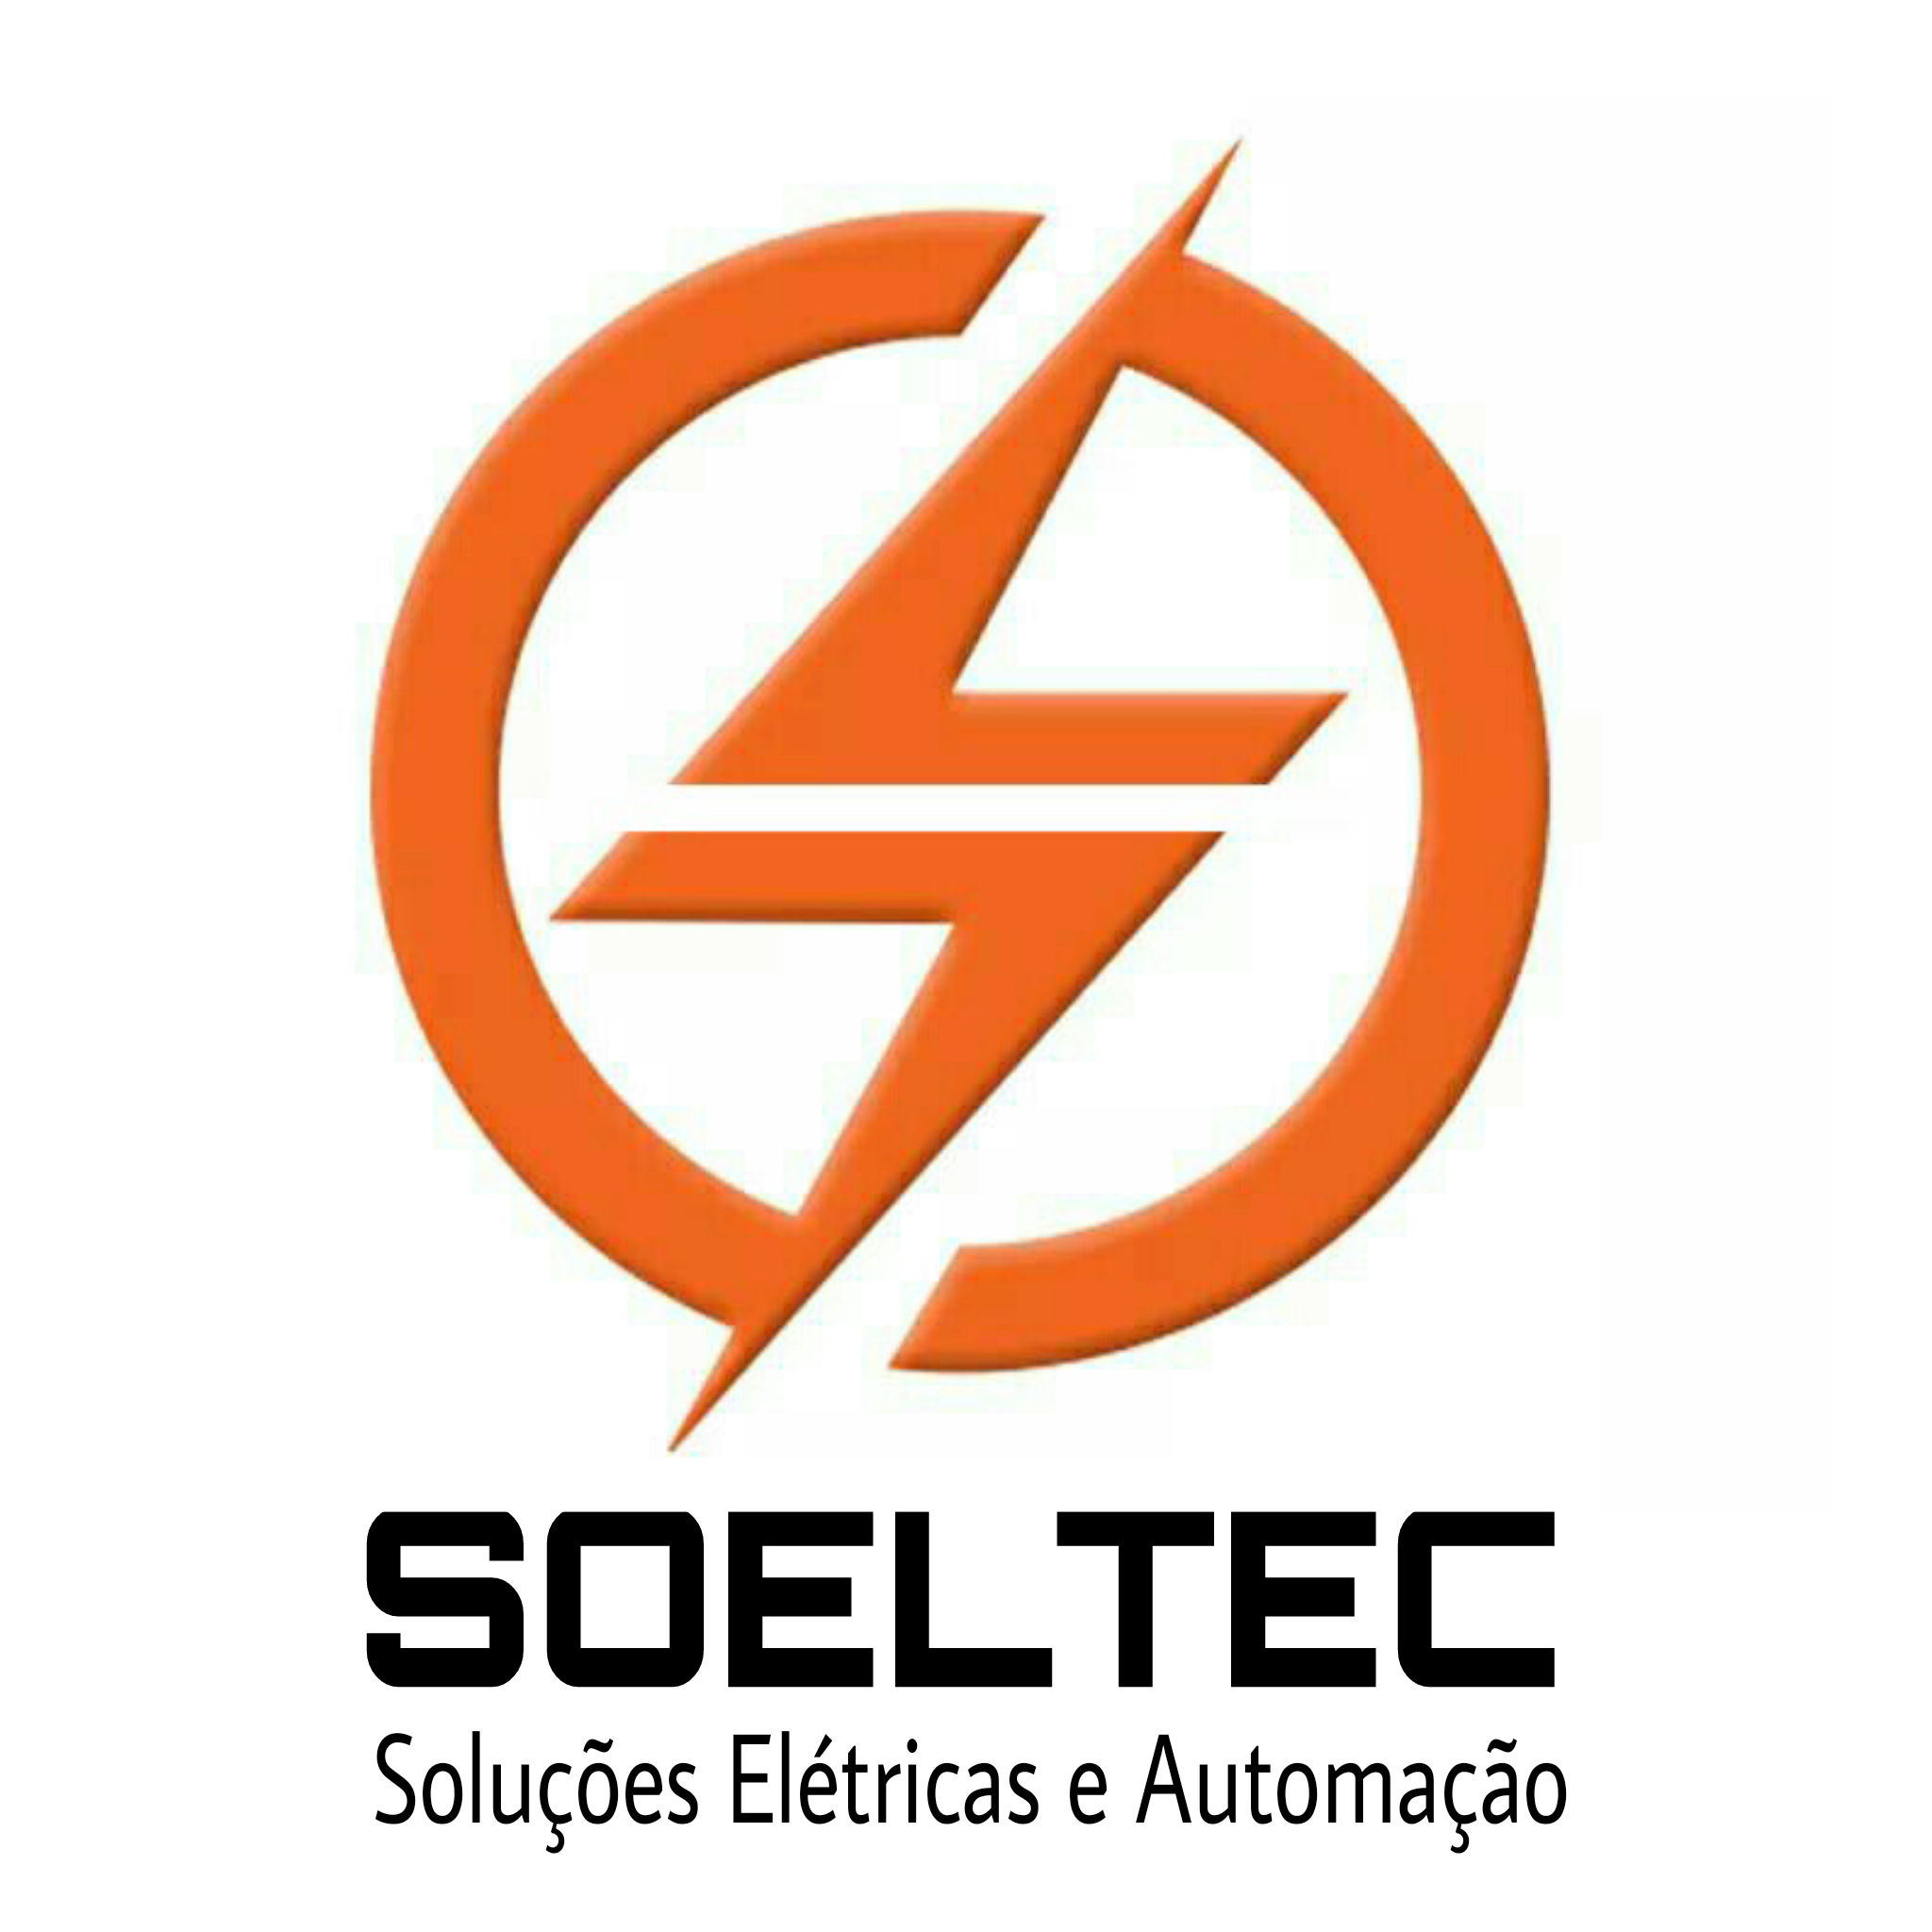 SOELTEC SOLUÇÕES ELÉTRICAS - Eletricista - Serviço - Rio de Janeiro, RJ